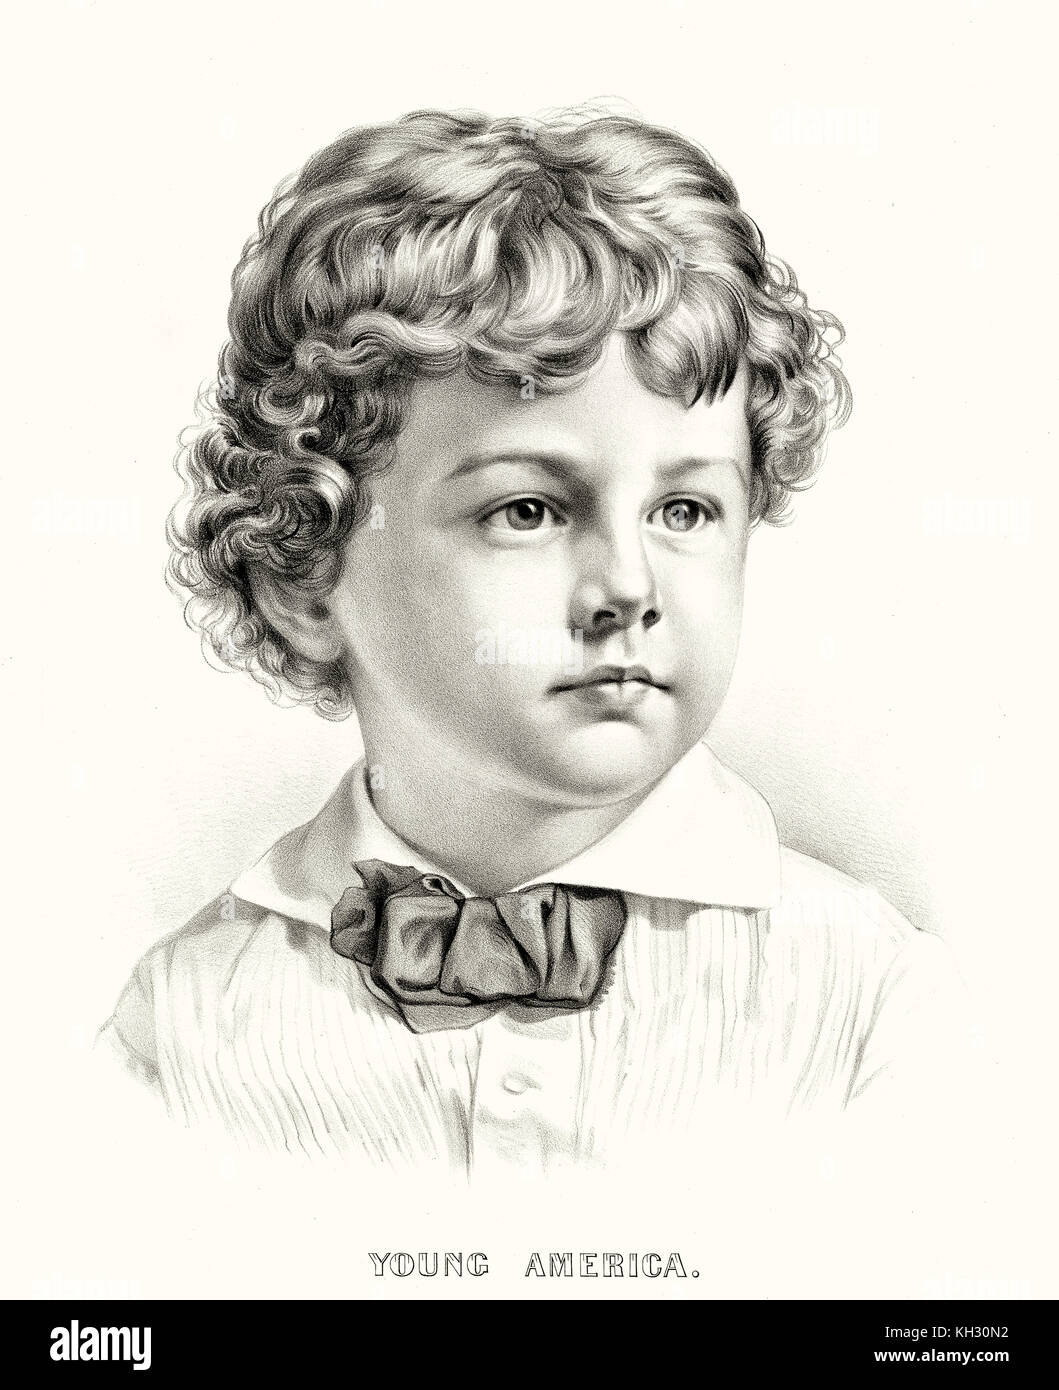 Vecchio ritratto inciso di un ragazzo simpatico come personificazione della giovane America.. Da Currier & Ives, publ. in New York, 1873 Foto Stock